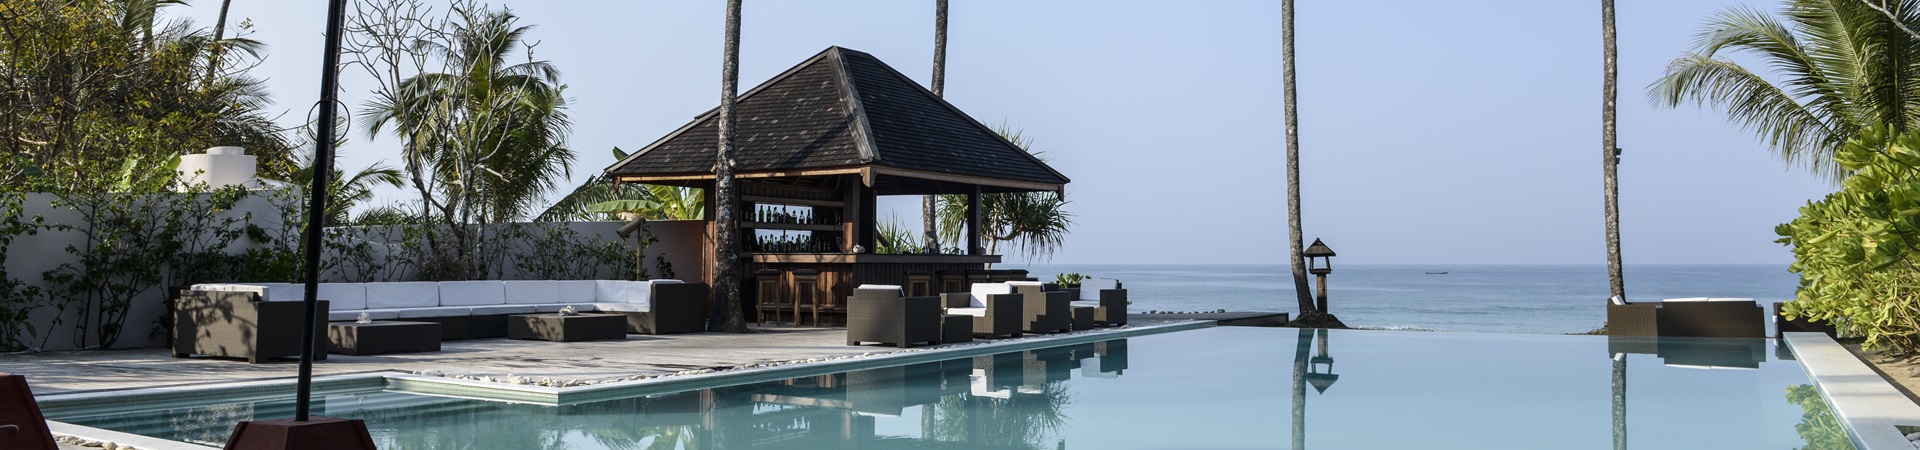 Image of Amara Ocean Resort